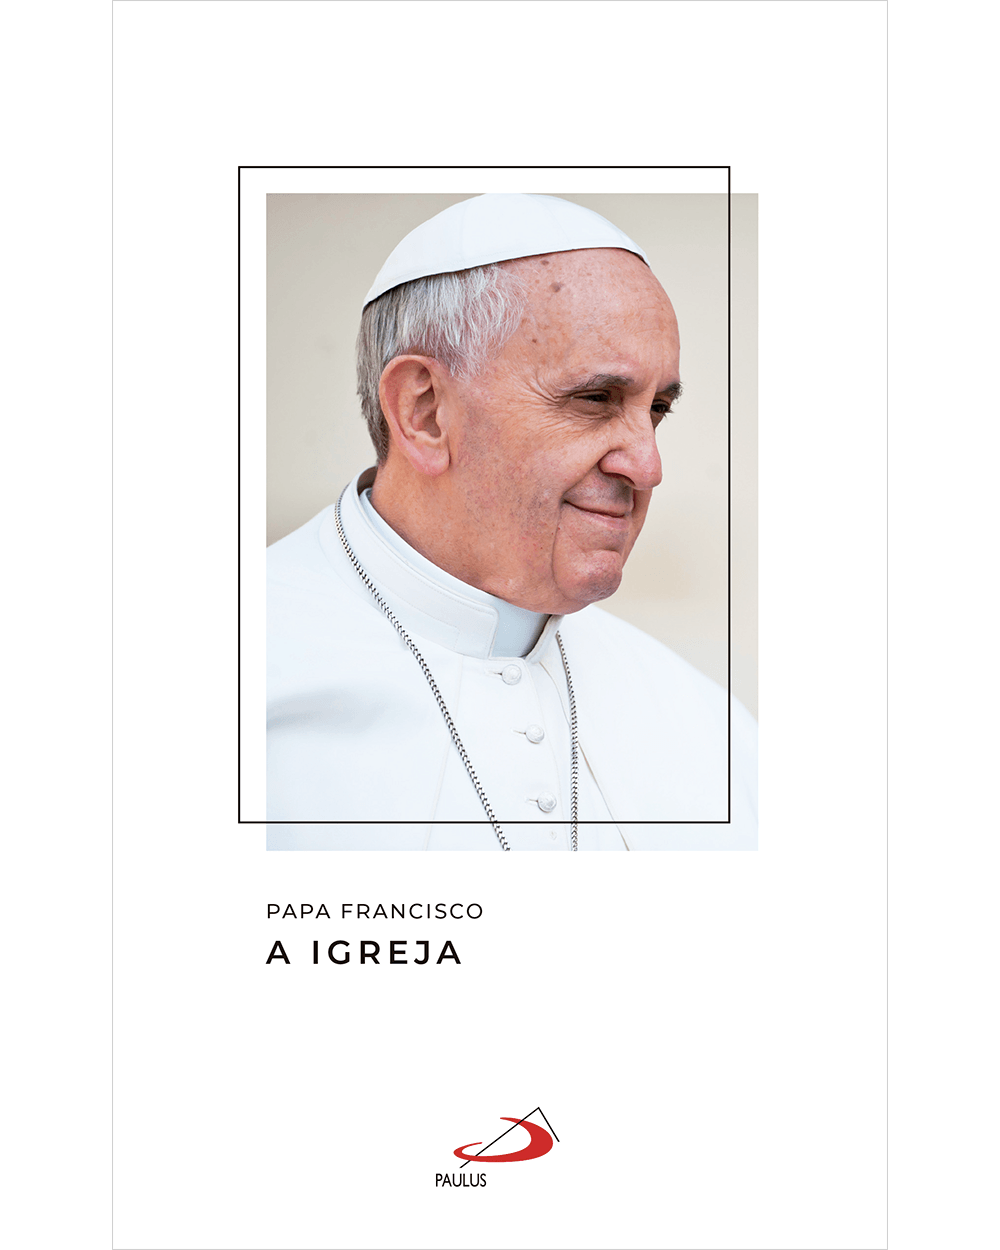 A festa do perdão como o Papa Francisco – PAULUS Editora